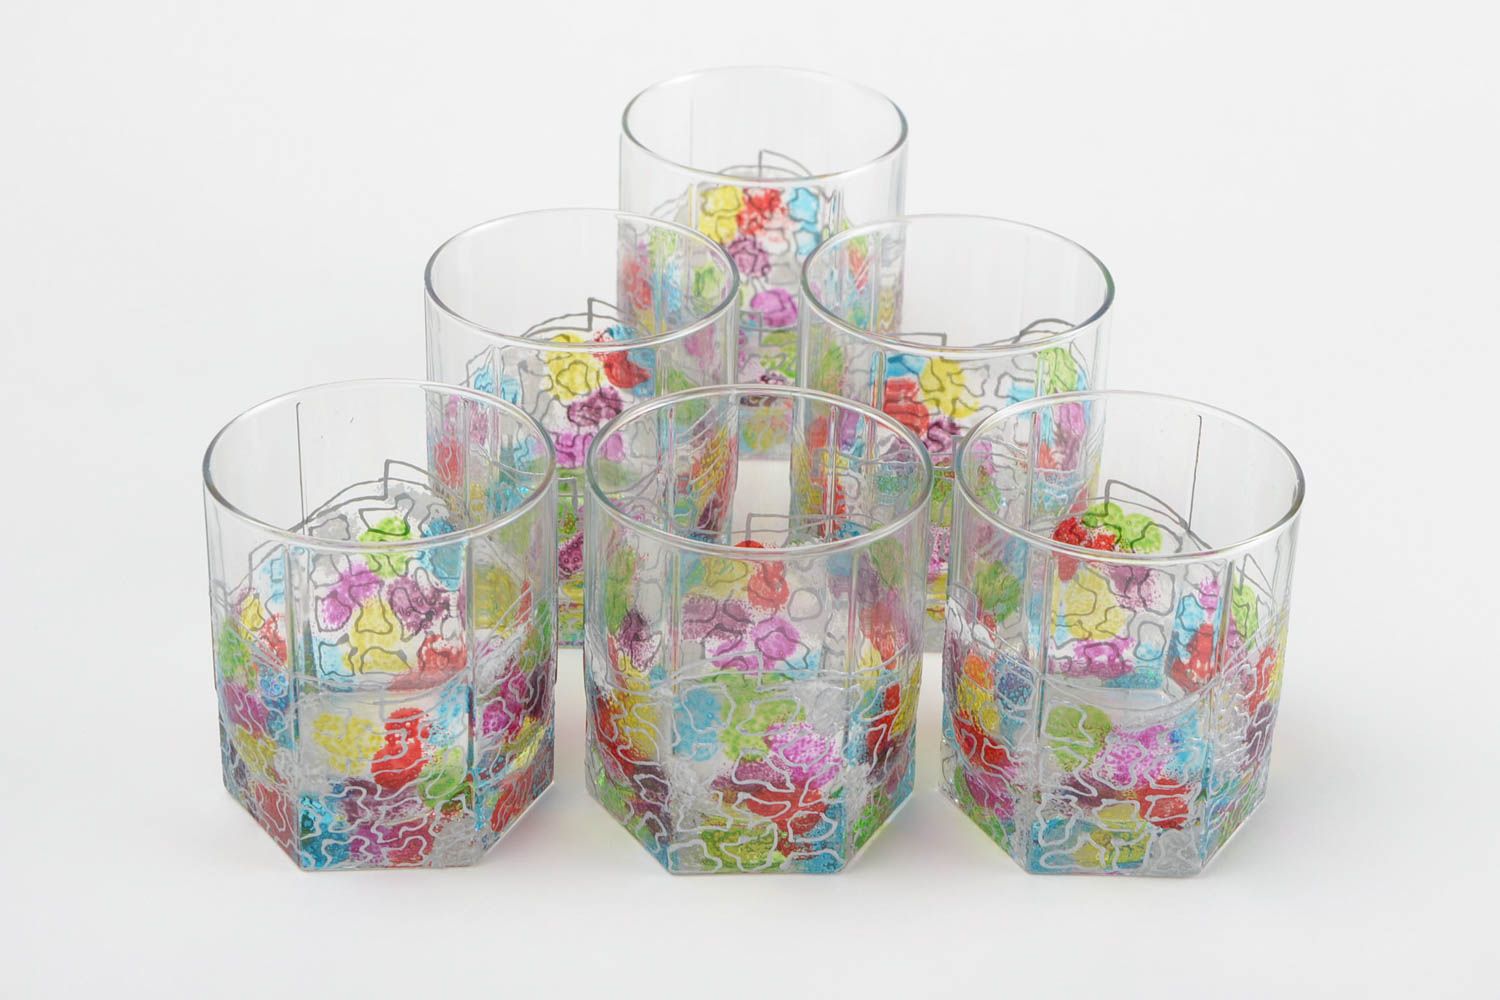 Ensemble de verres fait main Tasses en verre Vaisselle design peinte fantaisie photo 4